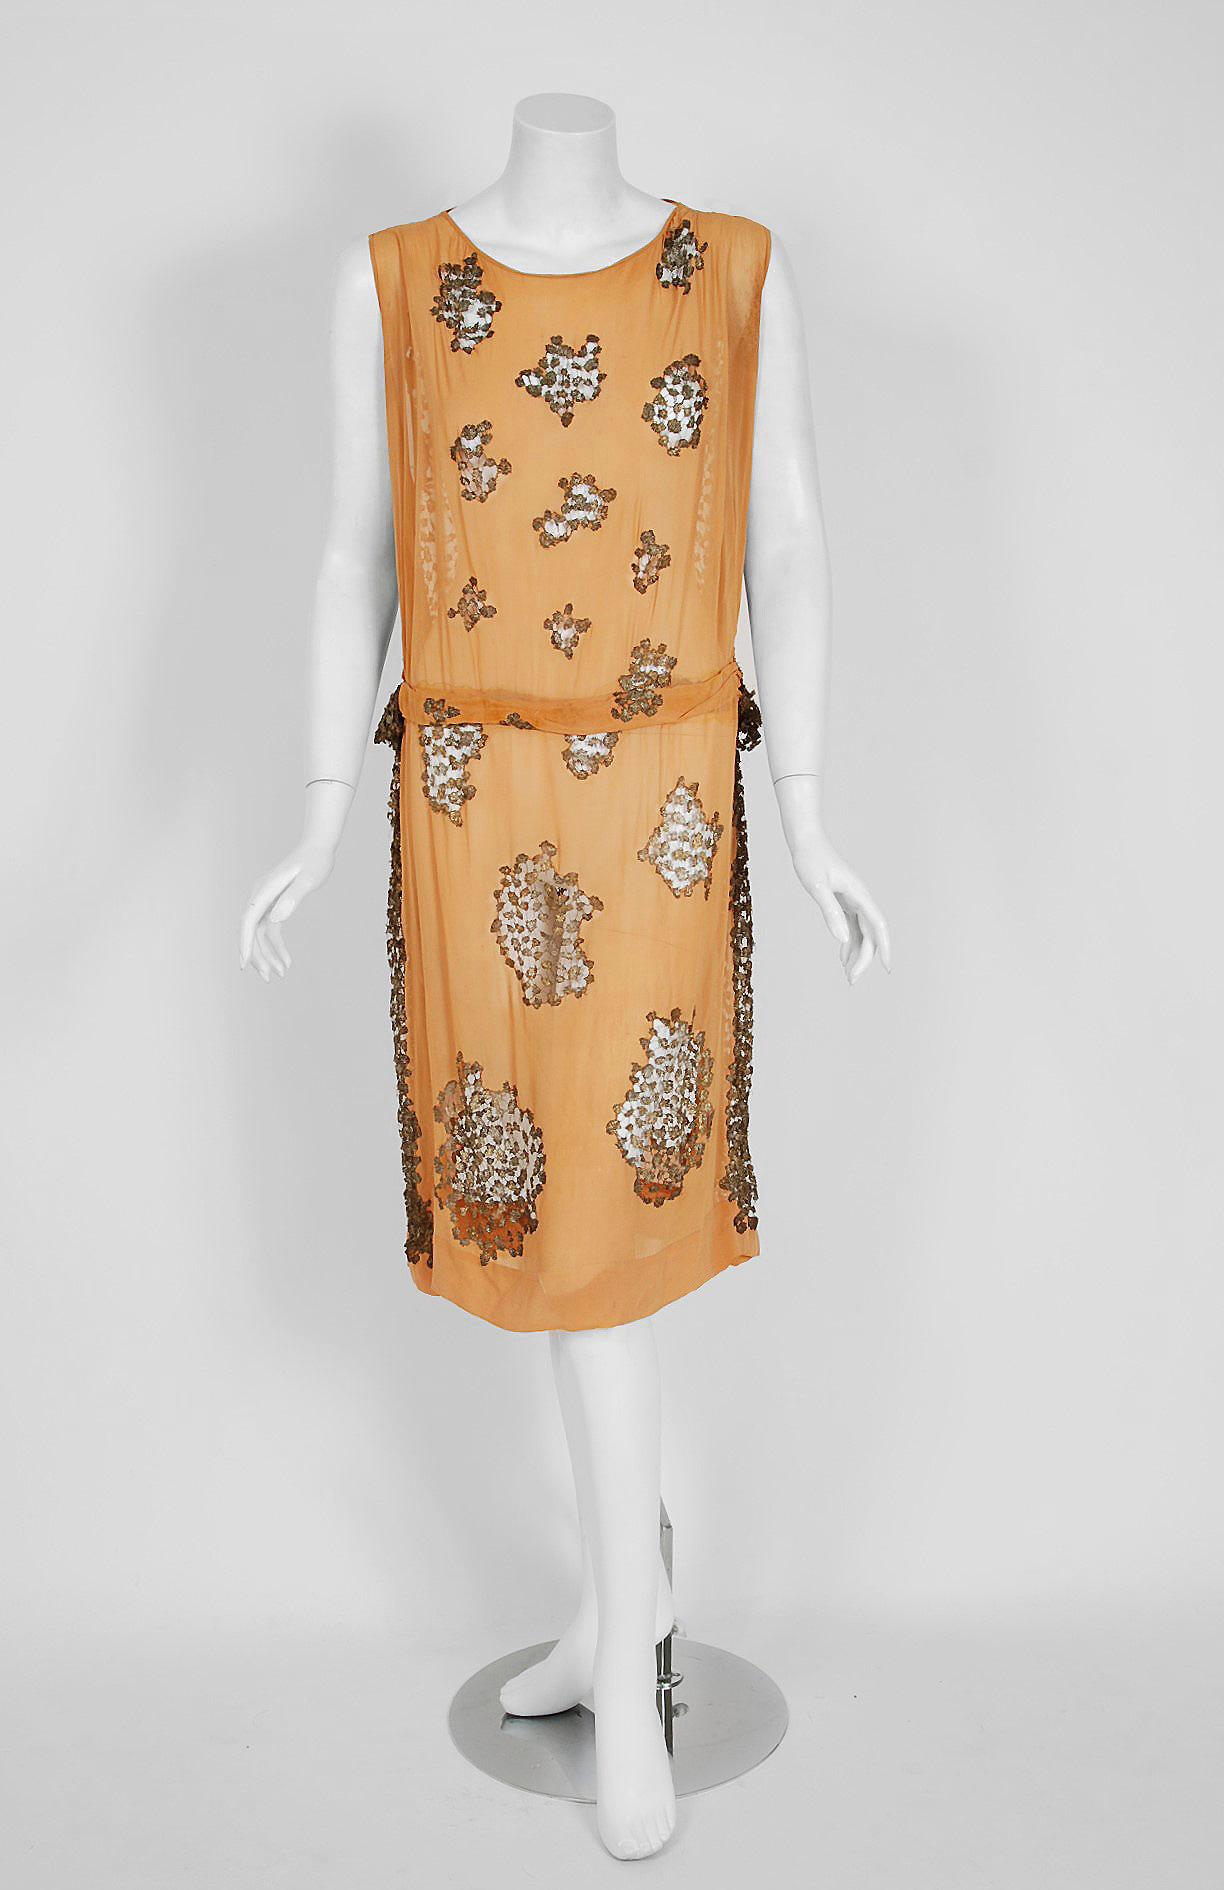 Goupy Paris war eines der elitären Couture-Häuser, die während der magischen Art-Deco-Ära tätig waren. Dieses atemberaubende, handgenähte Kleidungsstück ist aus leuchtend mandarinenfarbenem Seidenchiffon und metallisch-goldener Spitze gefertigt. Der